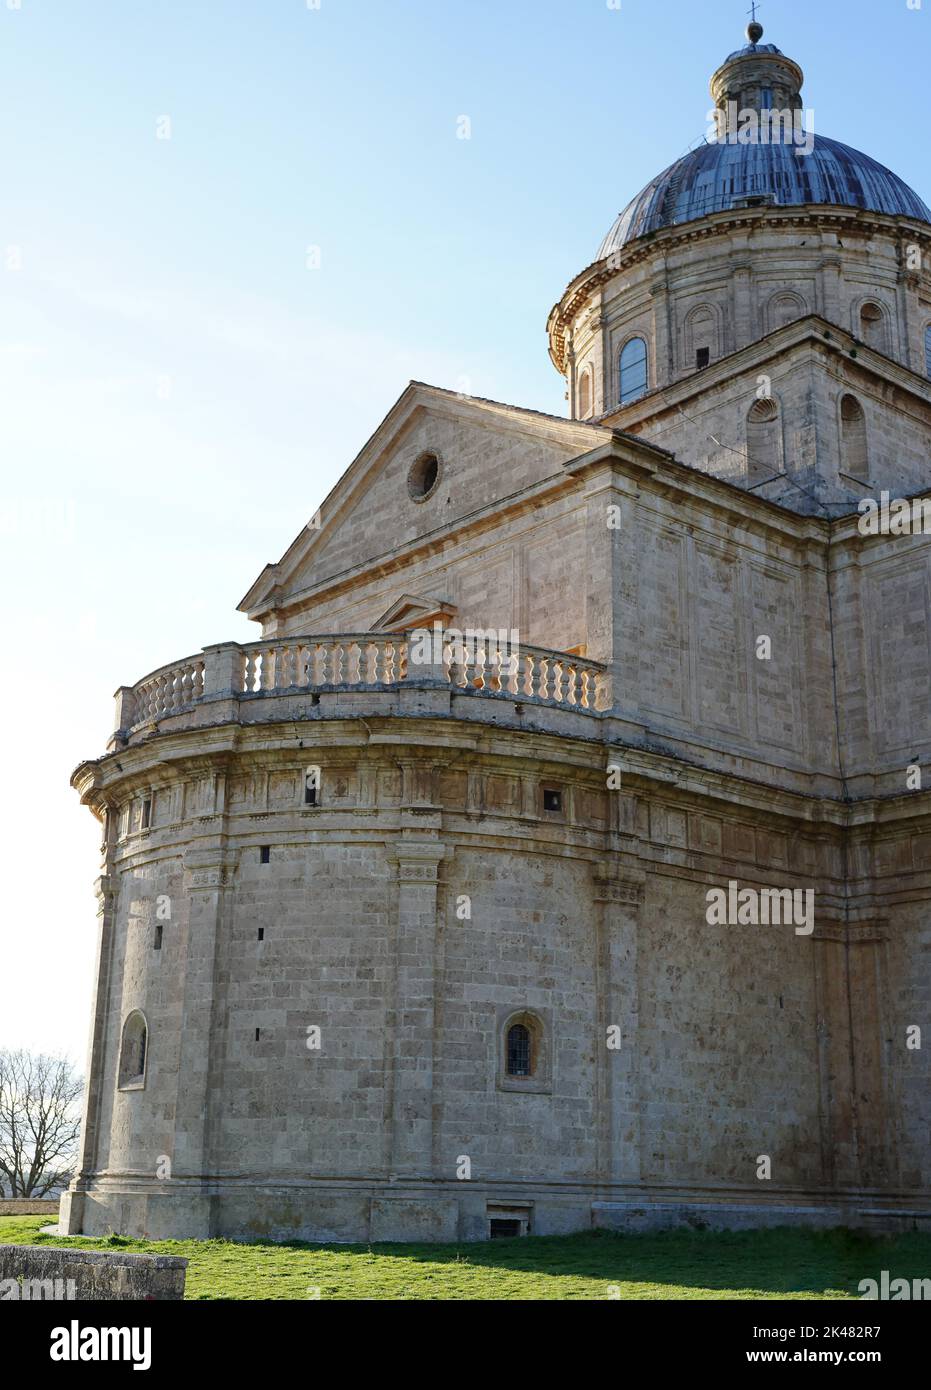 Tempio di San Biagio in the Tuscan city of Montepulciano Stock Photo